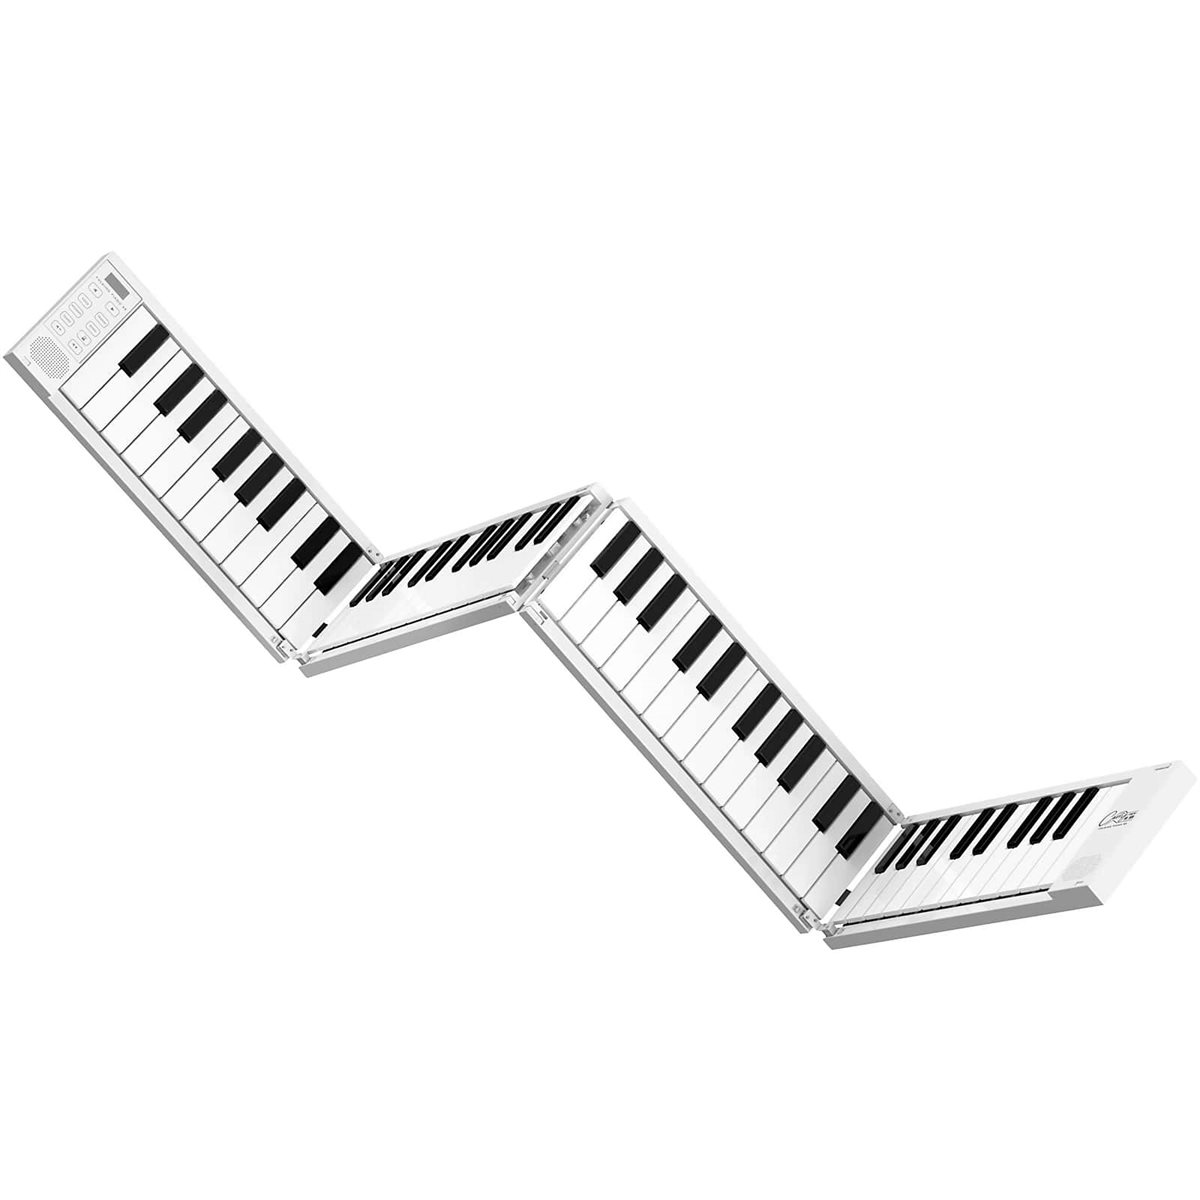 CARRY-ON - FOLDING PIANO / keyboard - 88 keys